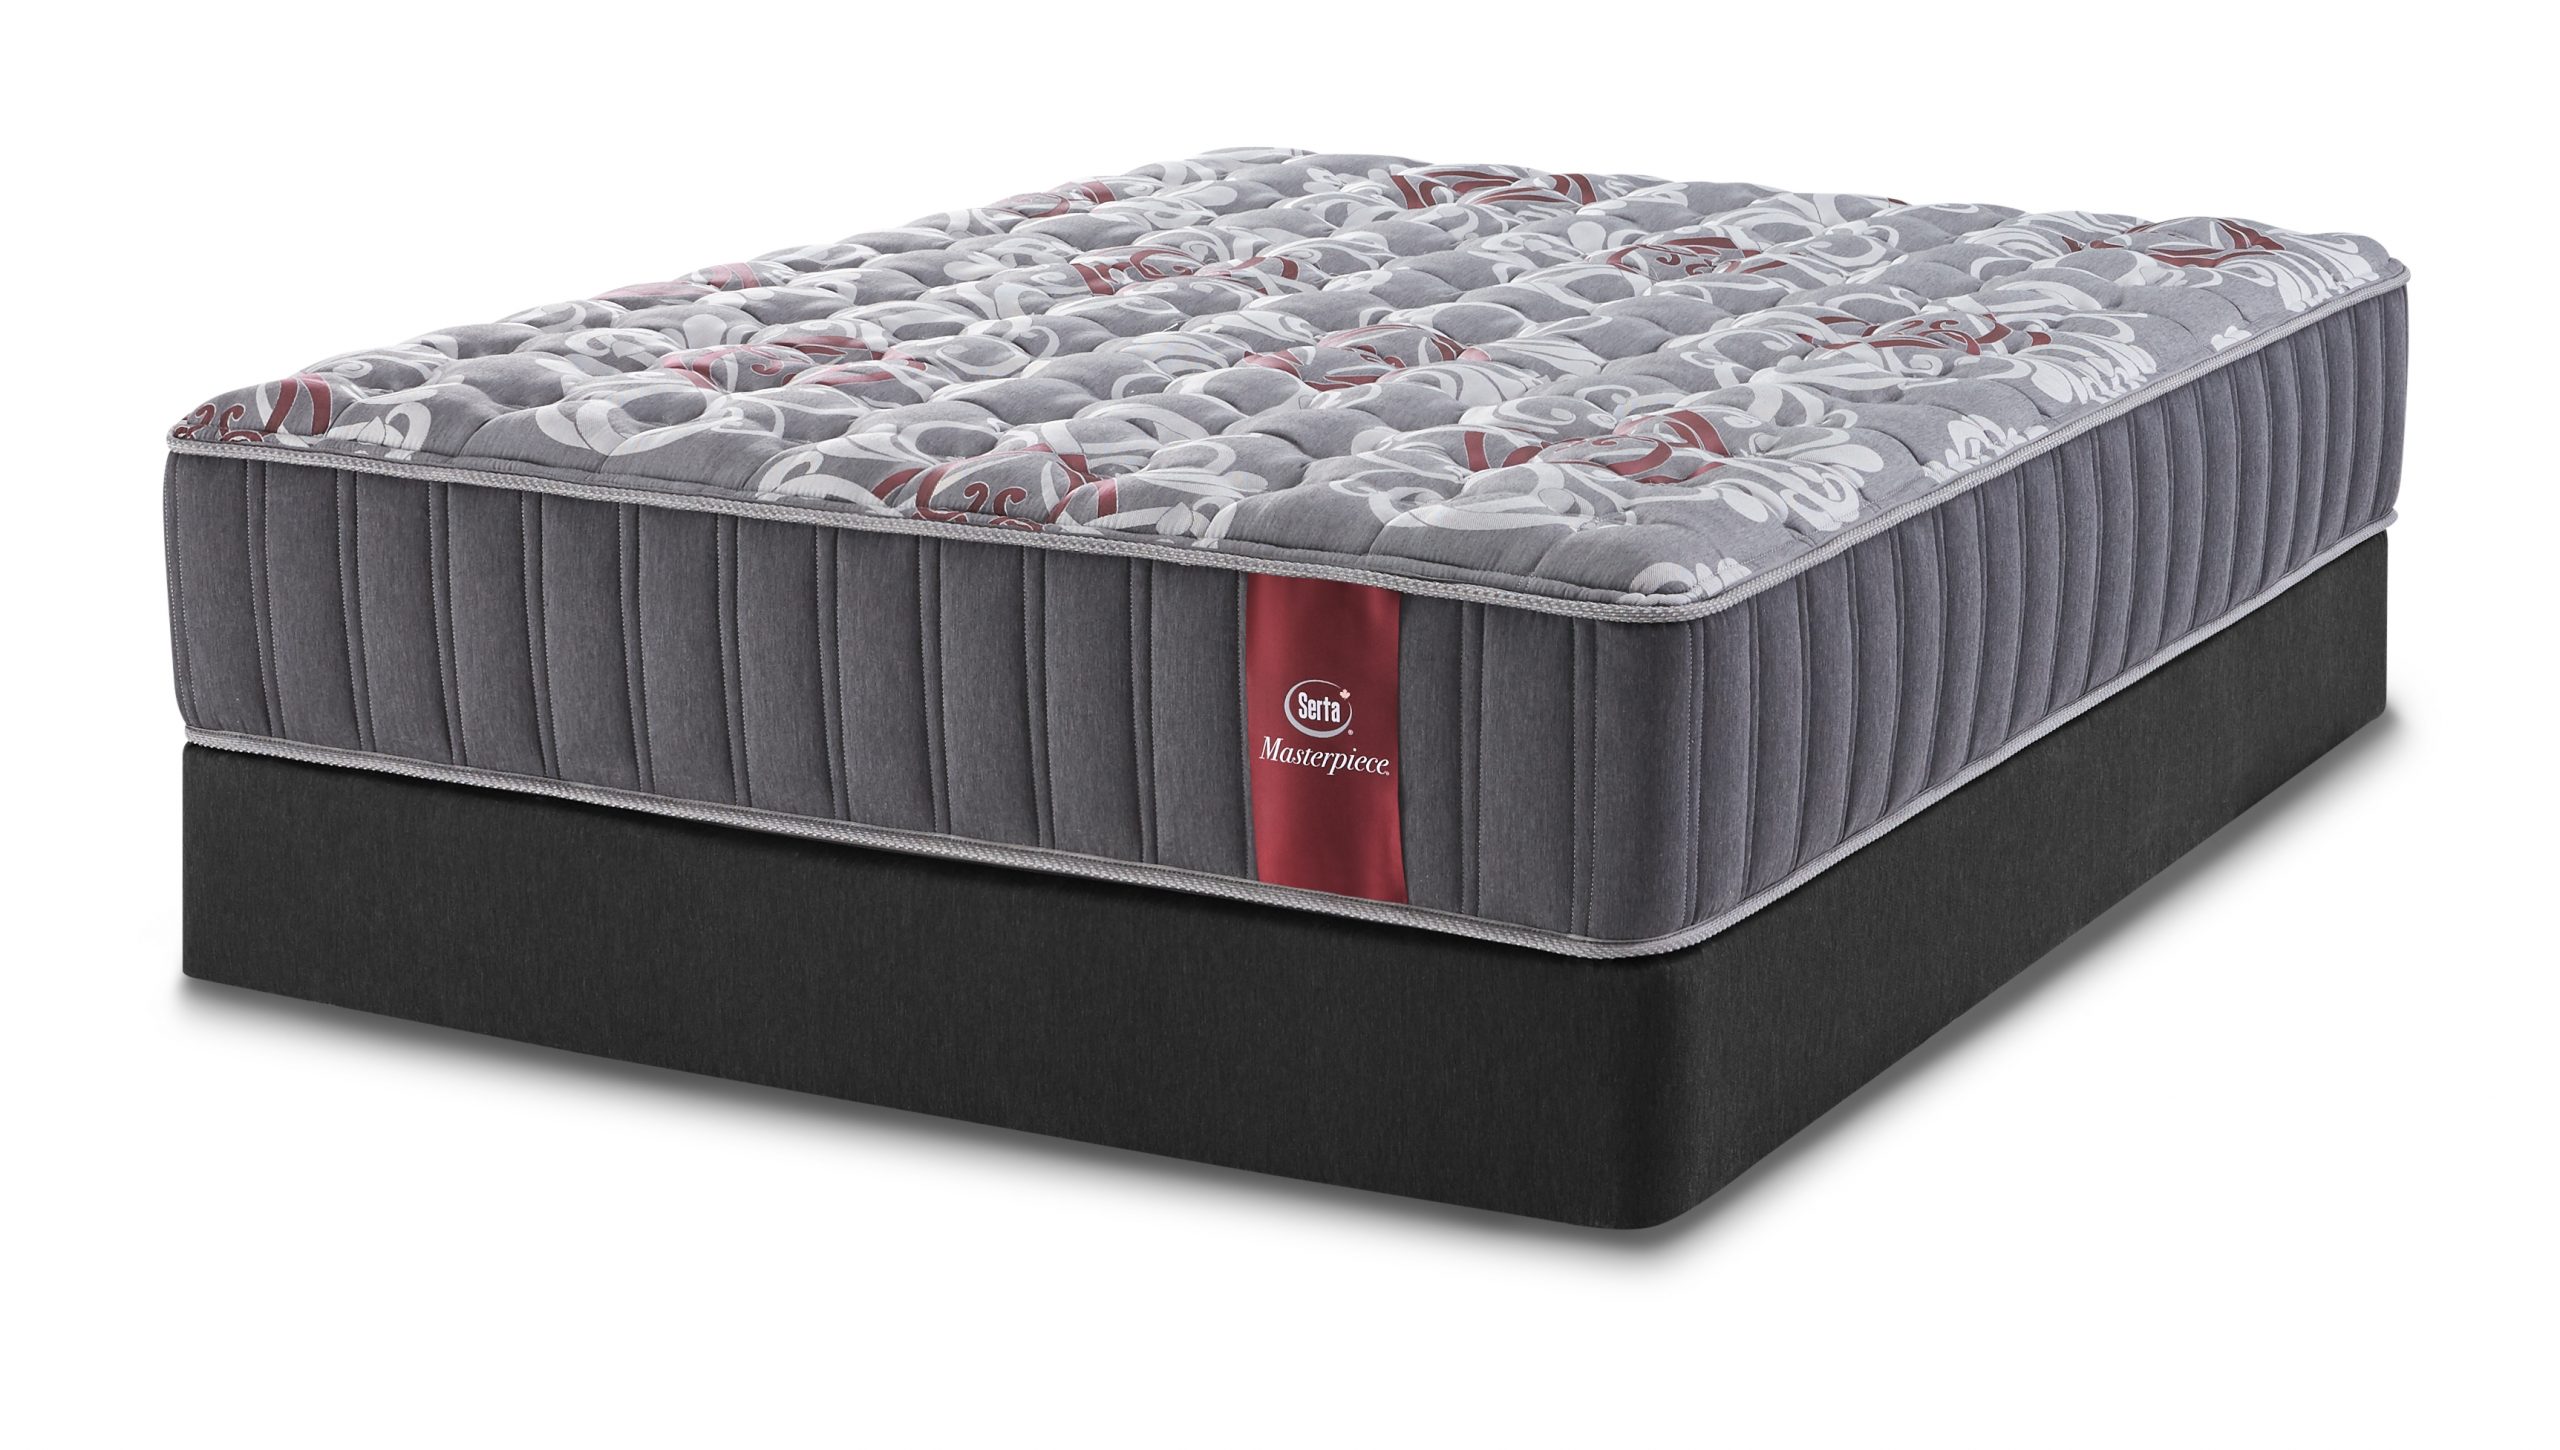 eurotex milan firm mattress